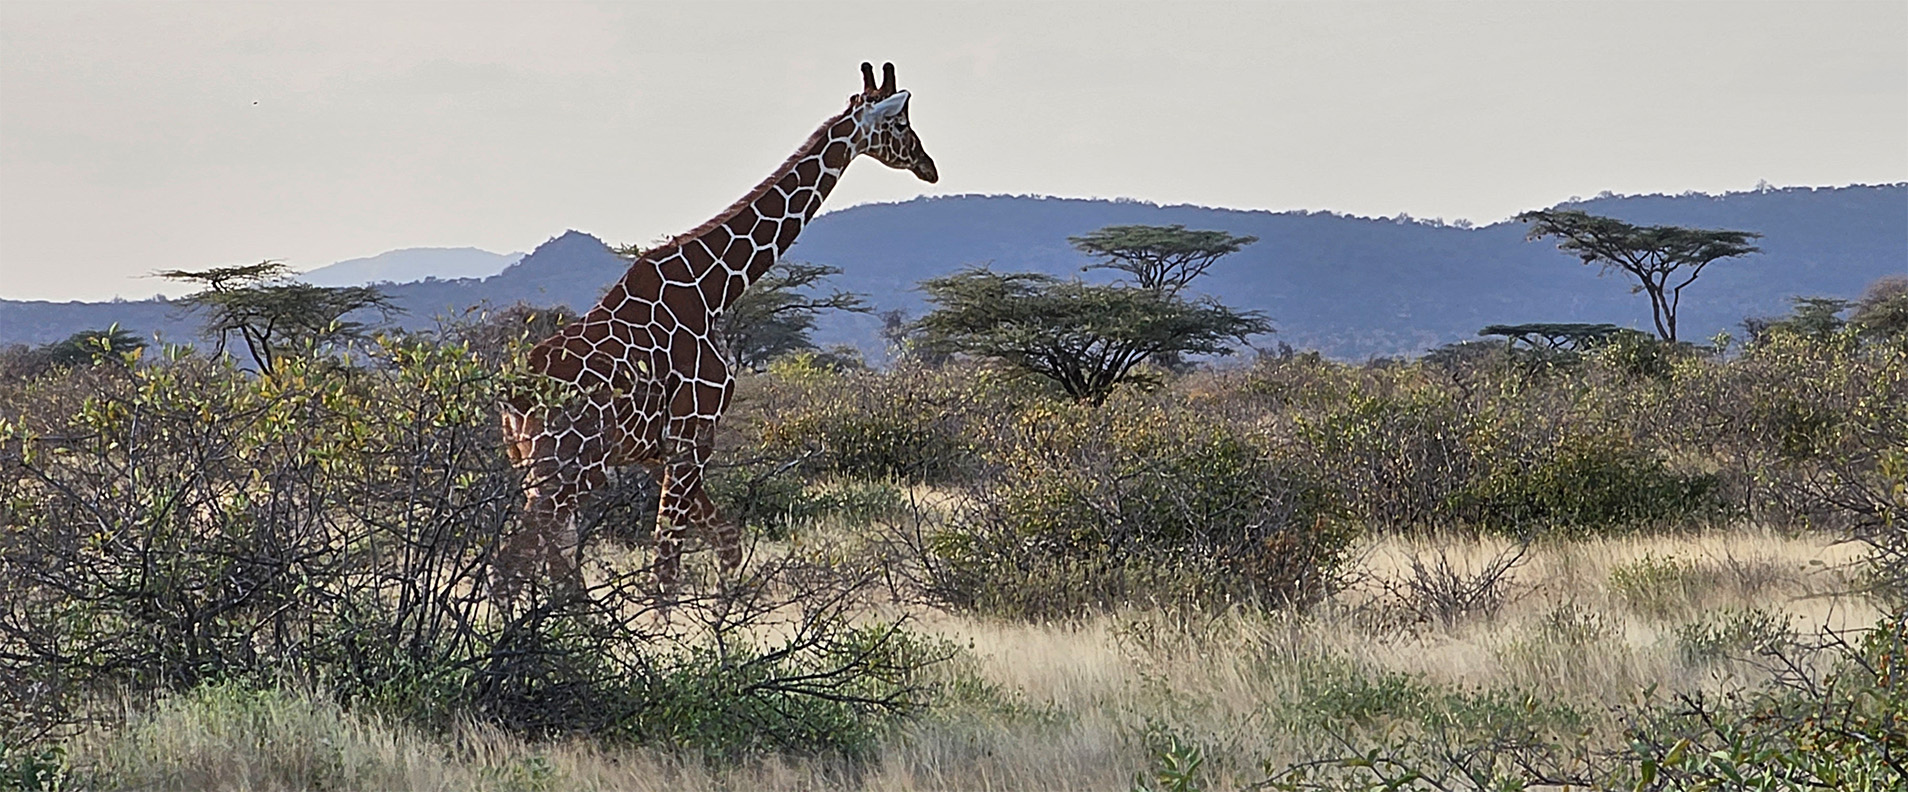 Beautiful Adult Giraffe In Africa on Safari